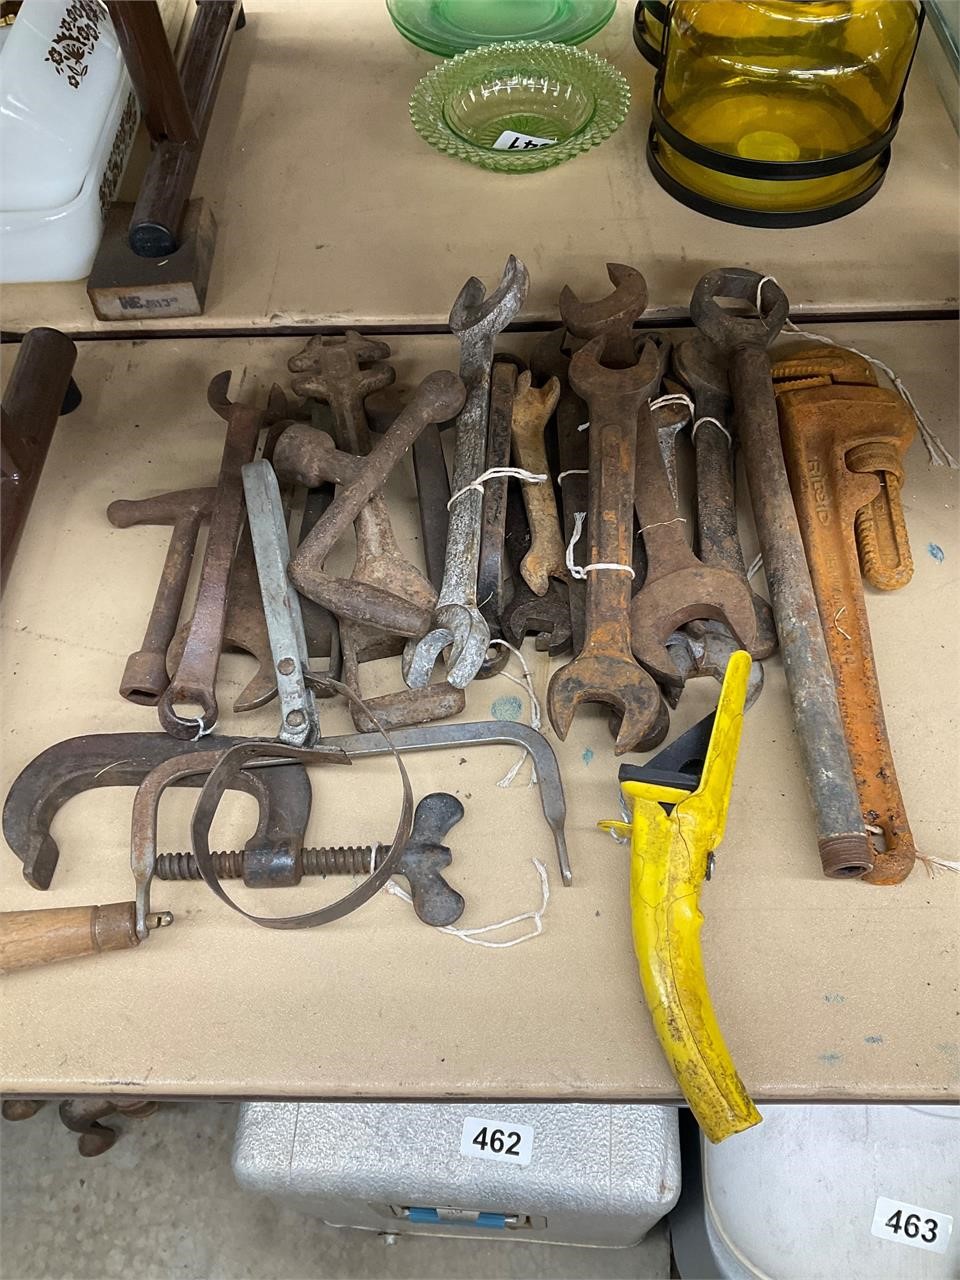 Tools lot